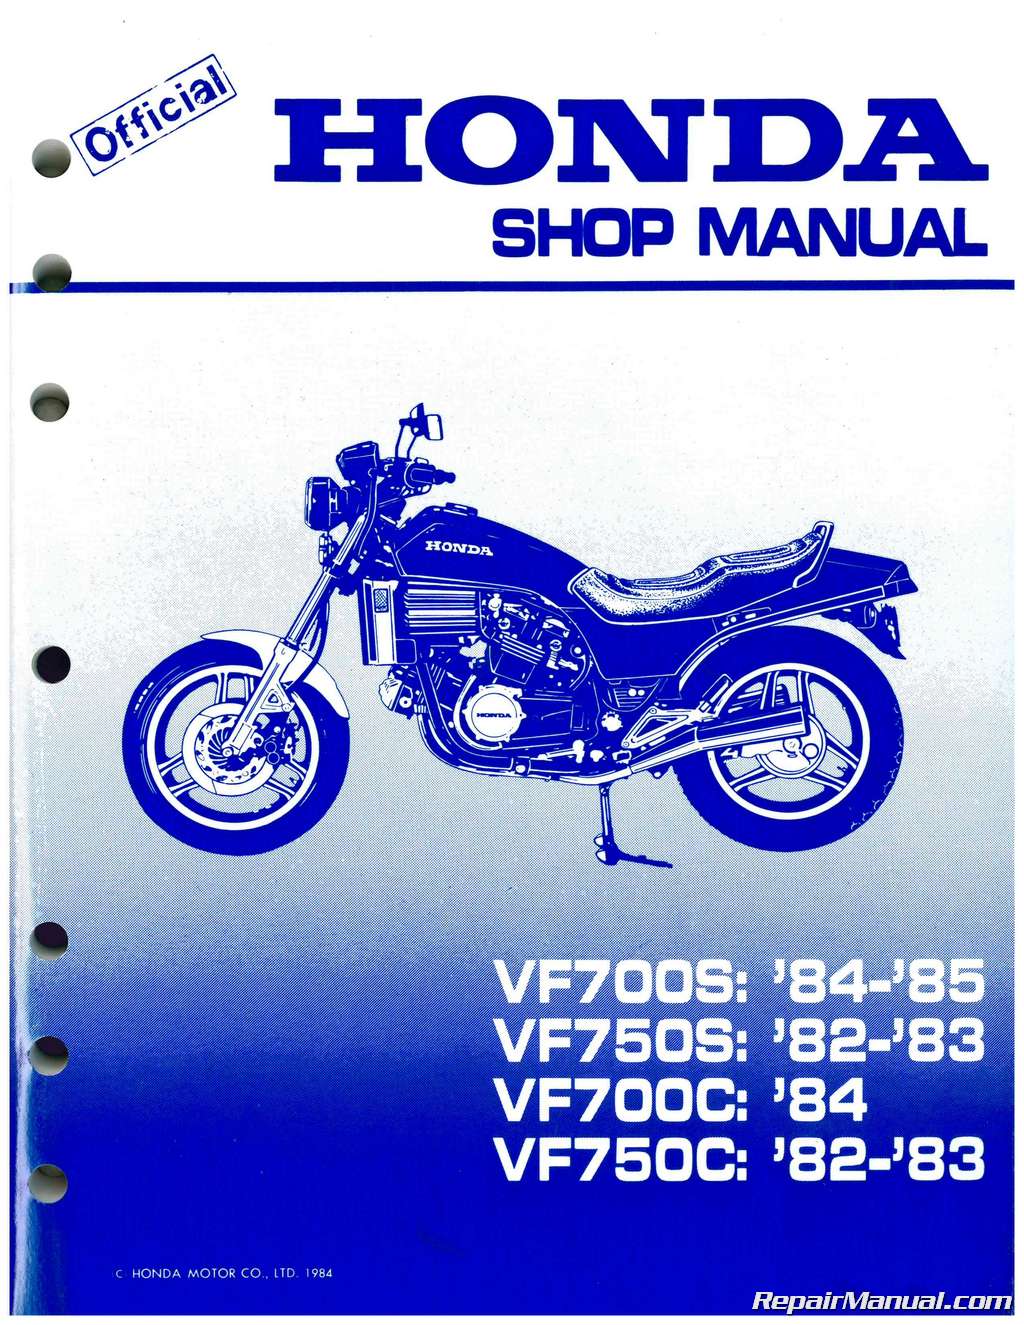 Honda magna 750c repair manual 1984 #6